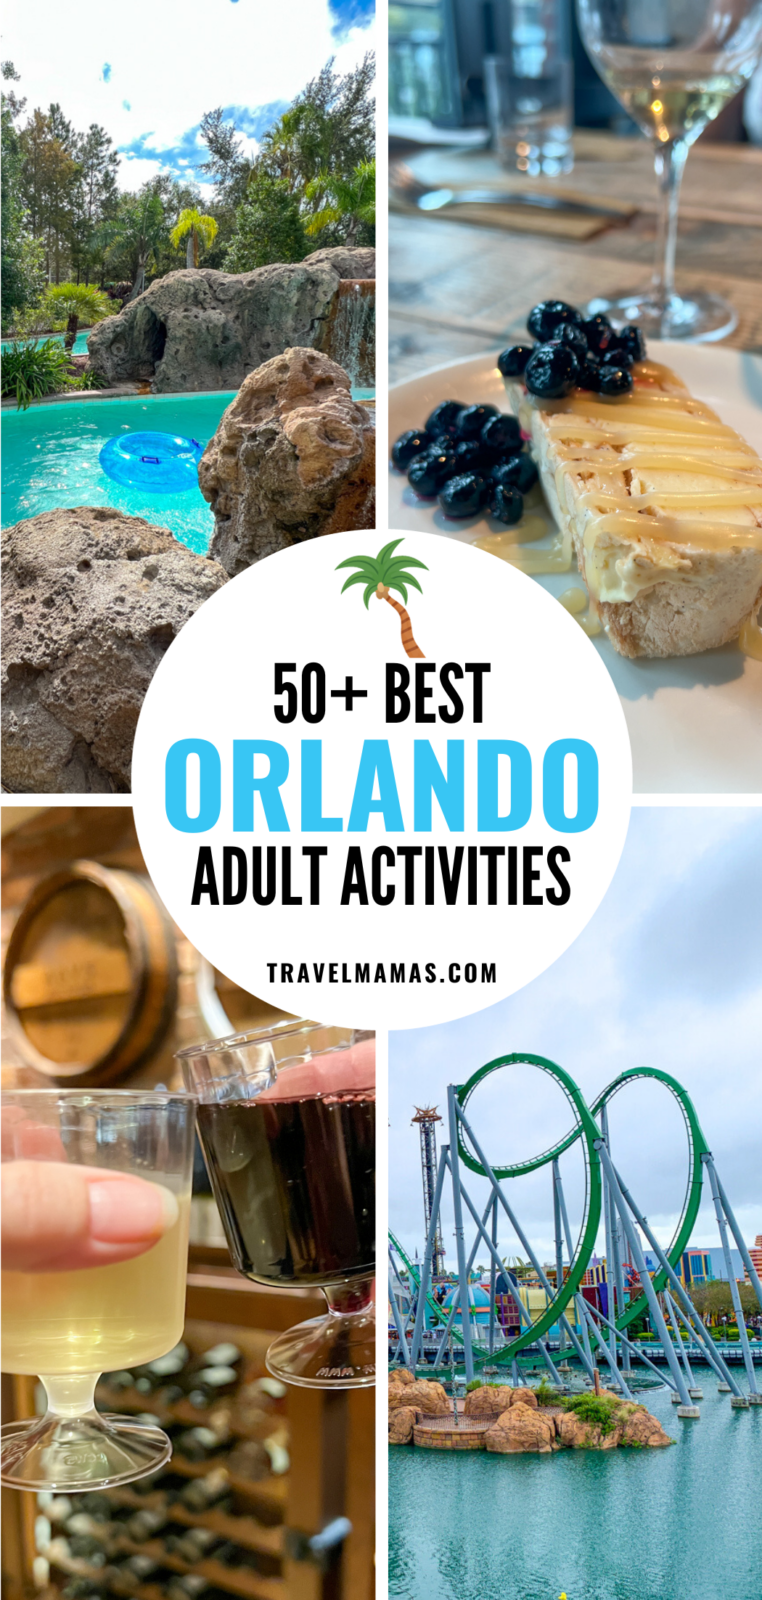 Best Orlando Adult Activities